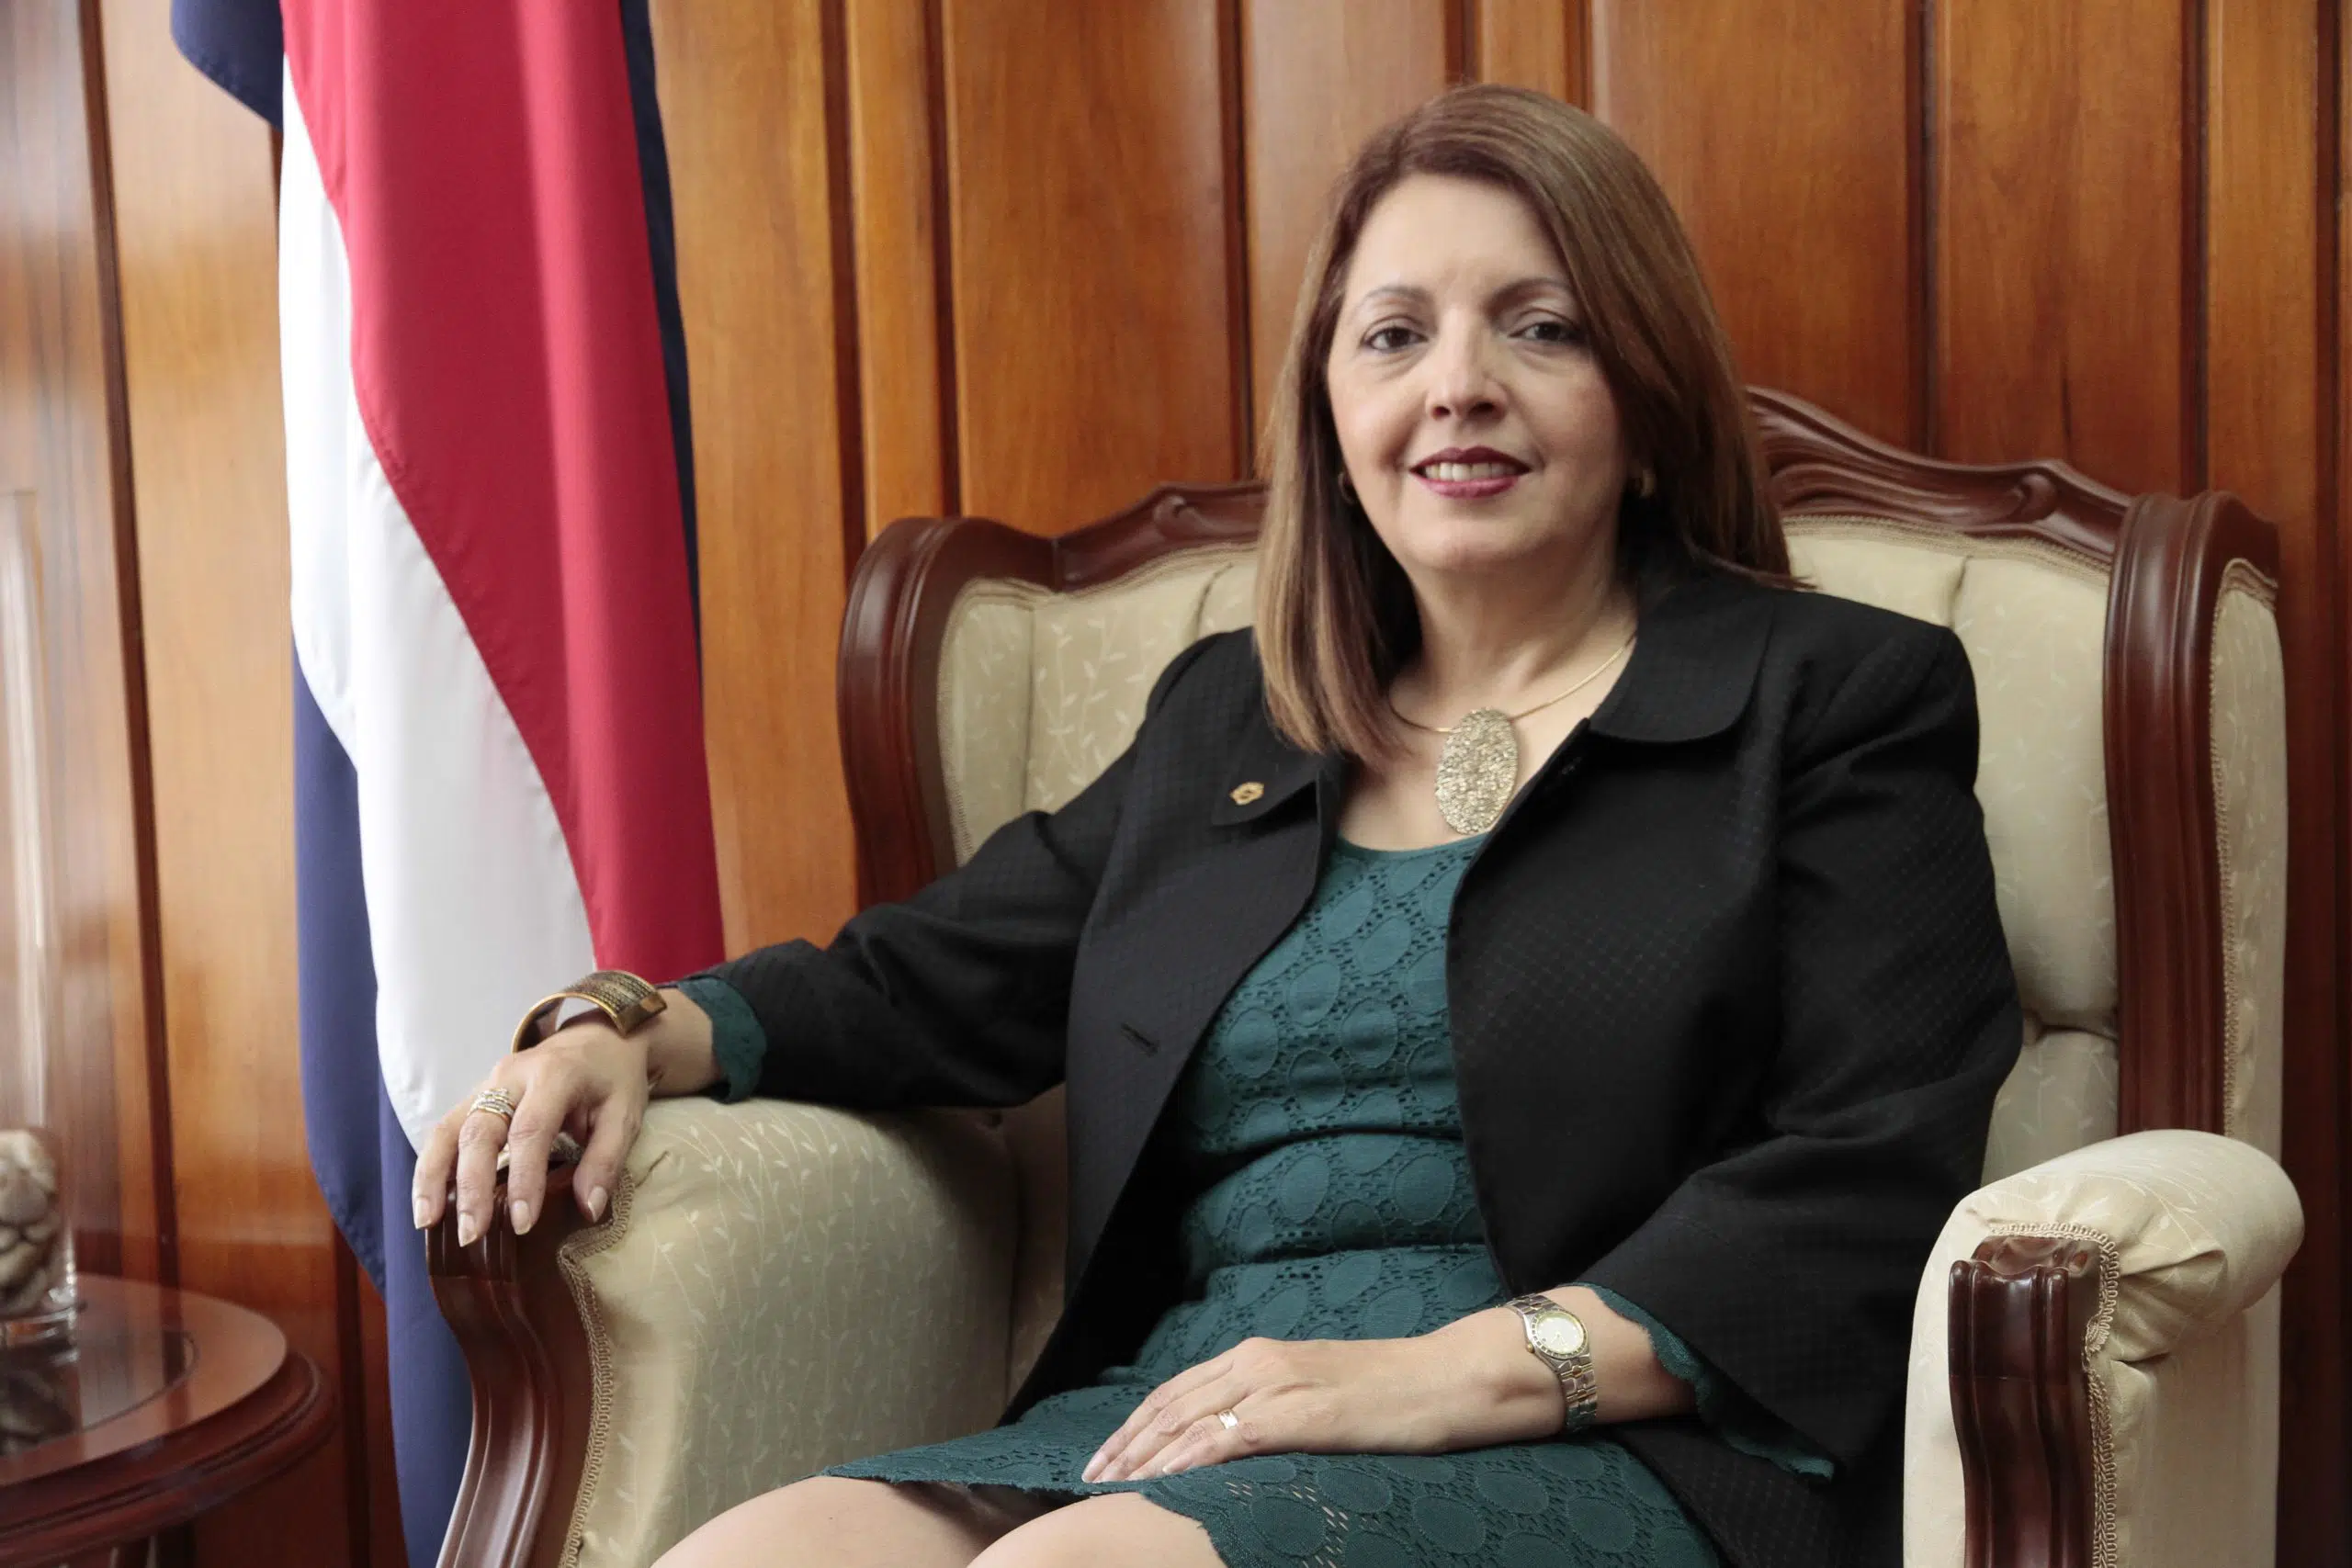 La magistrada Doris Arias, primera mujer que preside la Sala de lo Penal del Supremo de Costa Rica